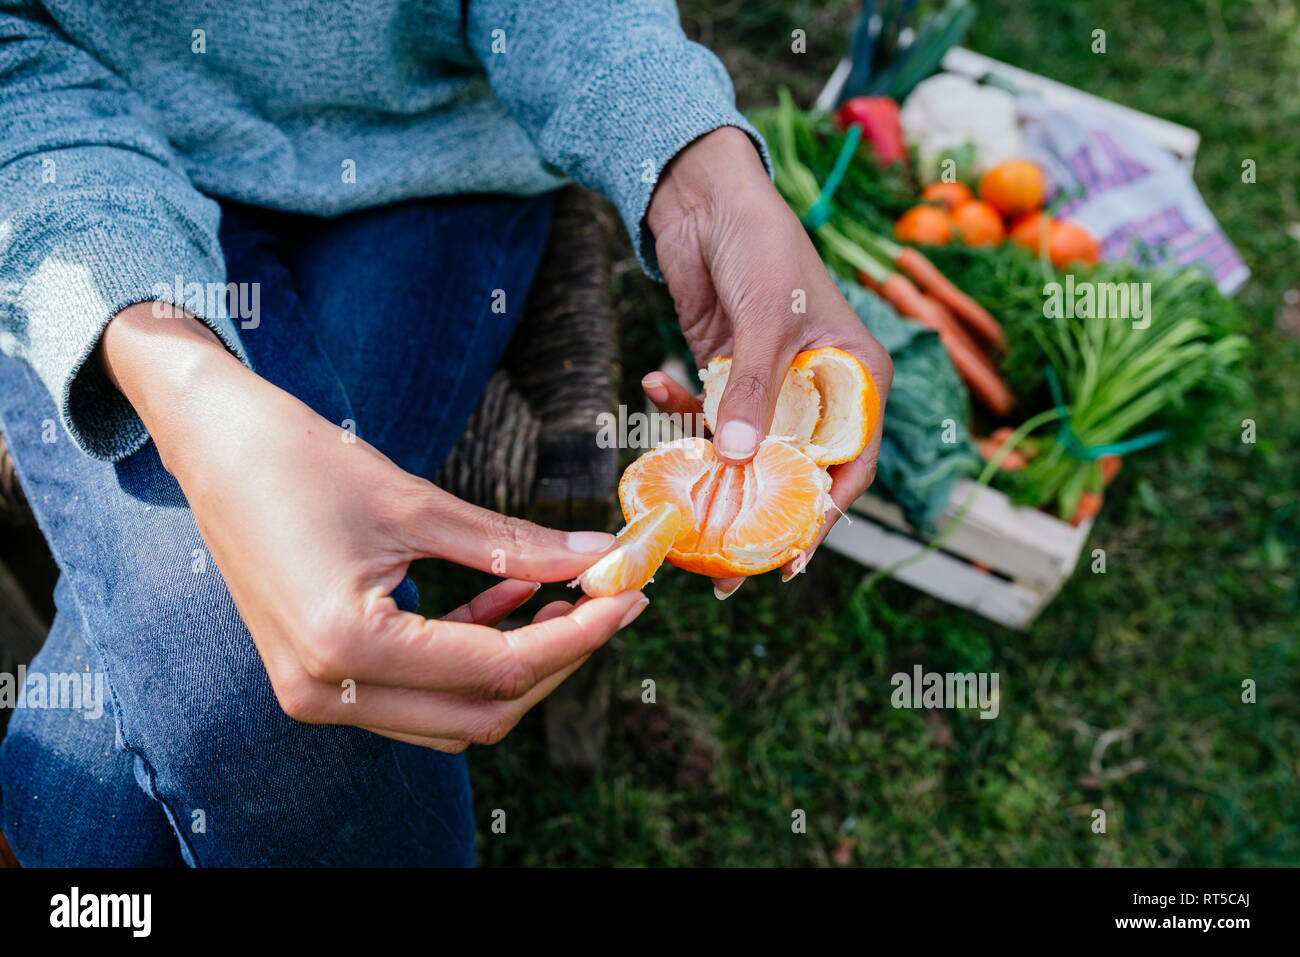 Woman peeling une mandarine, faire une pause dans un jardin potager Banque D'Images